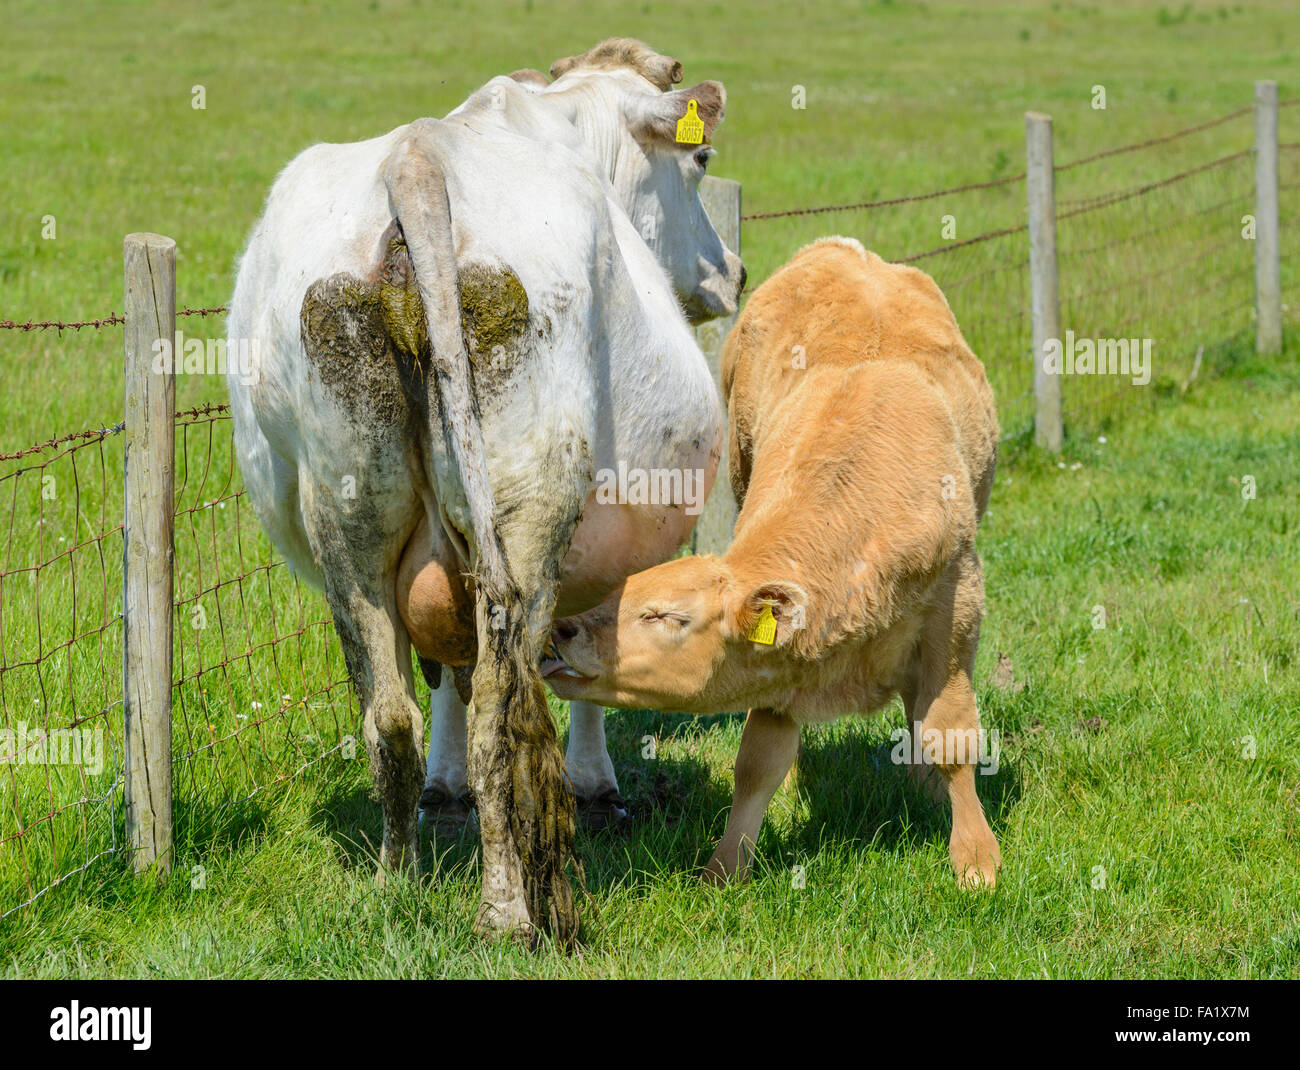 Jeune veau de sucer le lait de sa mère dans un champ en été dans le West Sussex, Angleterre, Royaume-Uni. L'alimentation de la vache. Banque D'Images